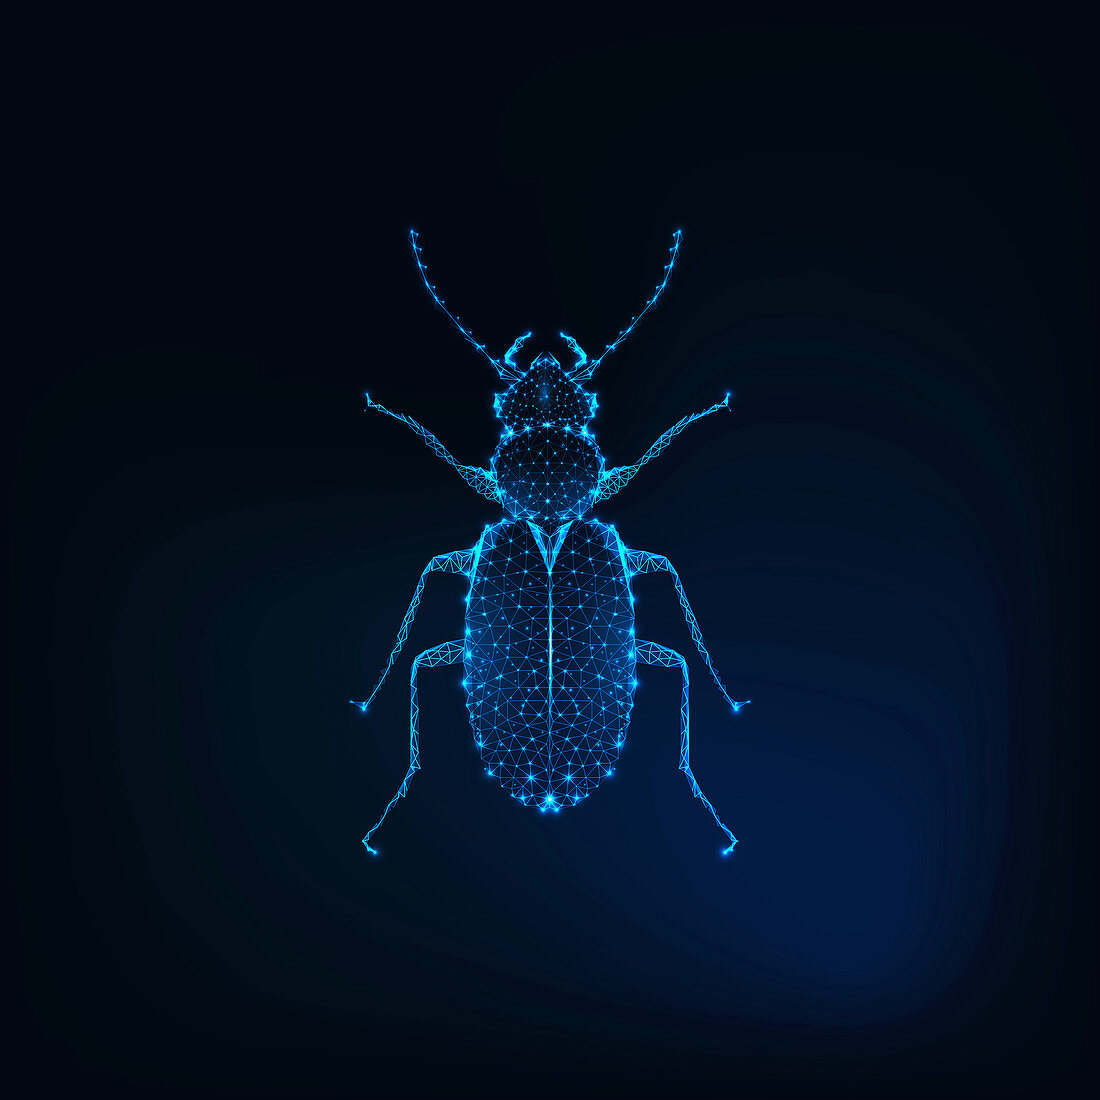 June bug, illustration